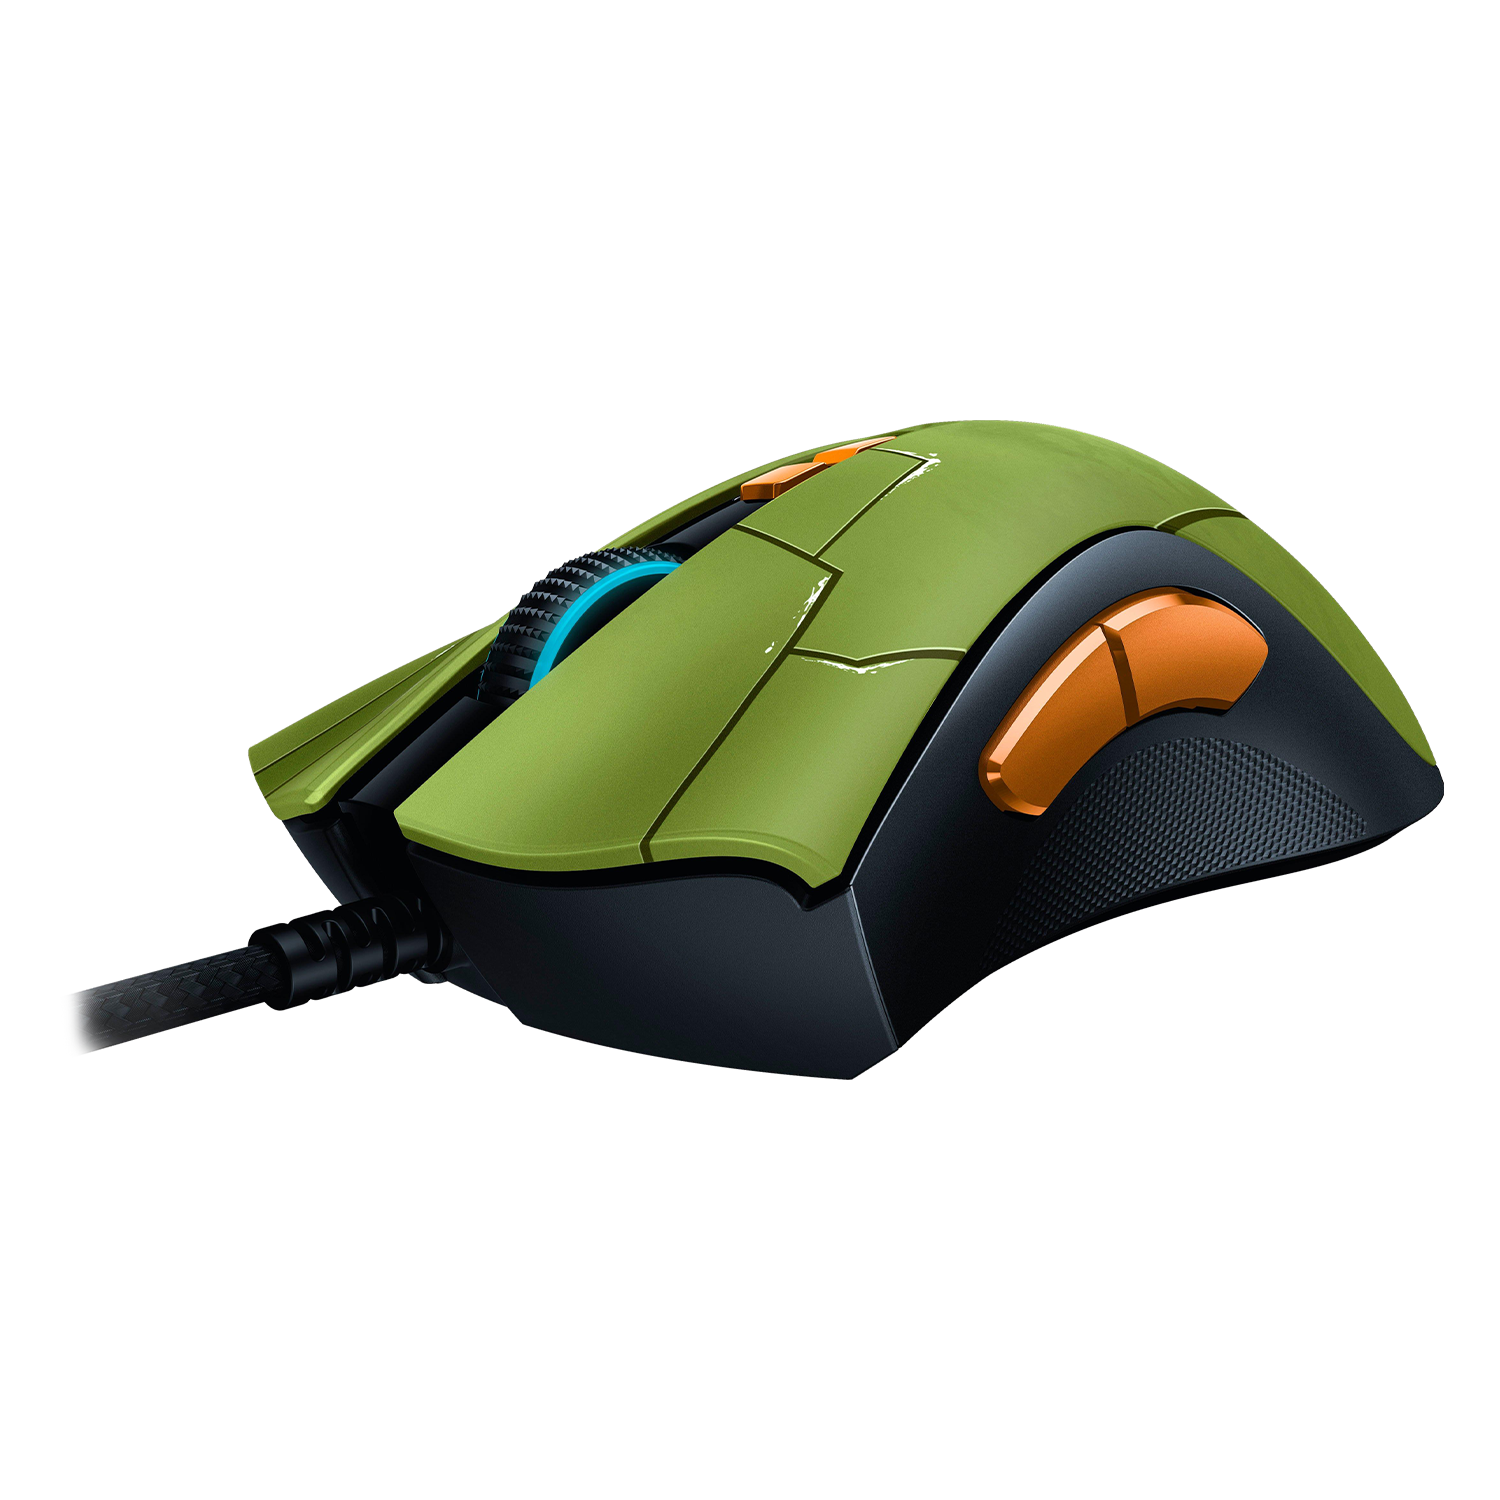 Mouse Gamer Razer Deathadder V2 Halo Infinite Edition - (Z01-03210300-R3M1)